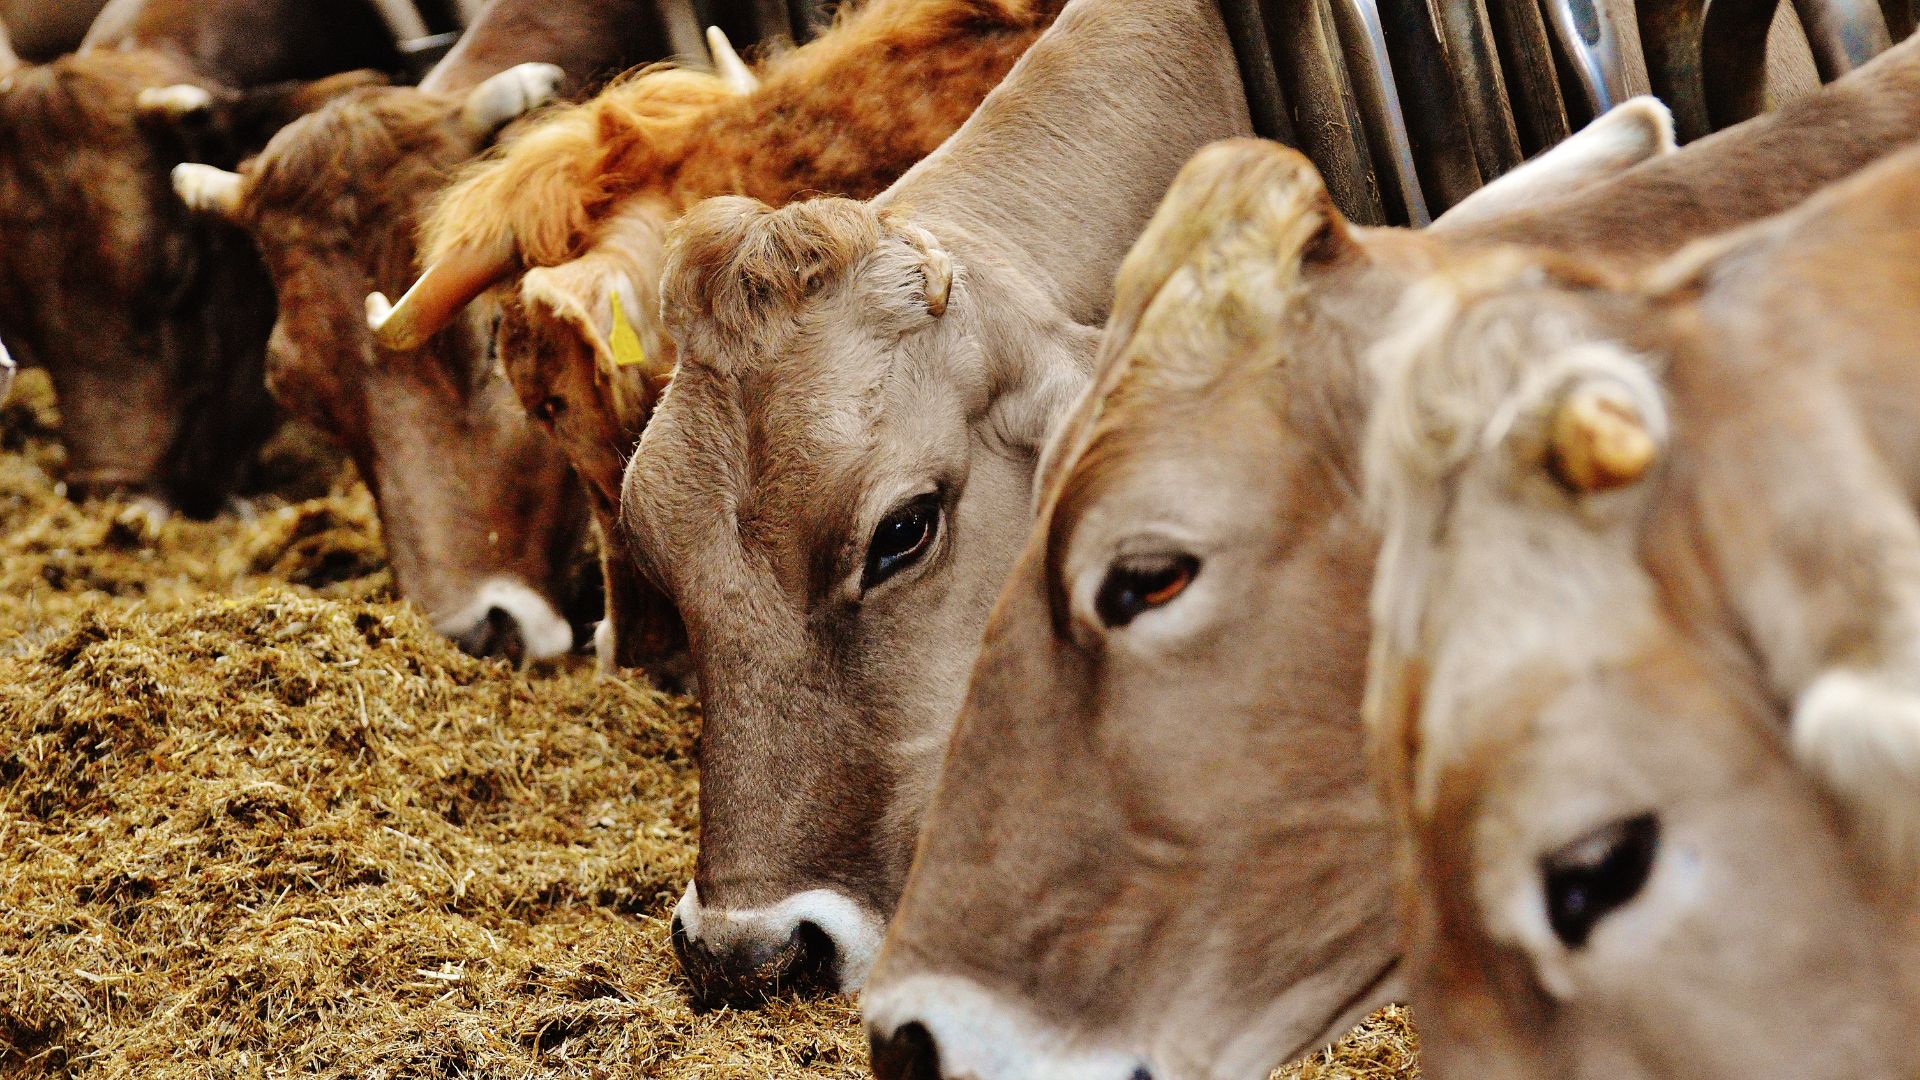 Digestão dos bovinos é a principal fonte de emissão de metano (CH4) - Foto: Reprodução/Canva